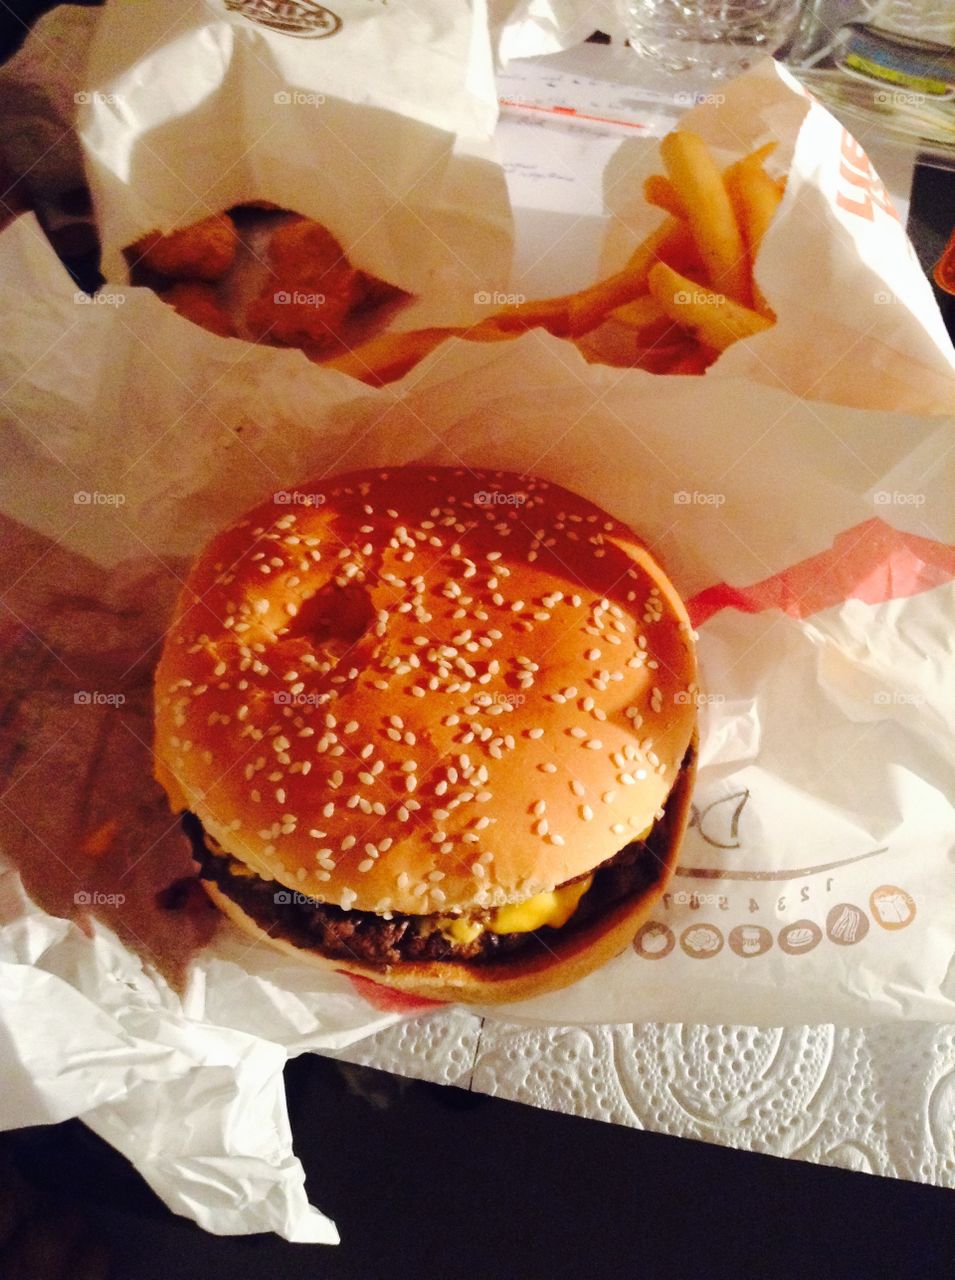 Burger from Burger King